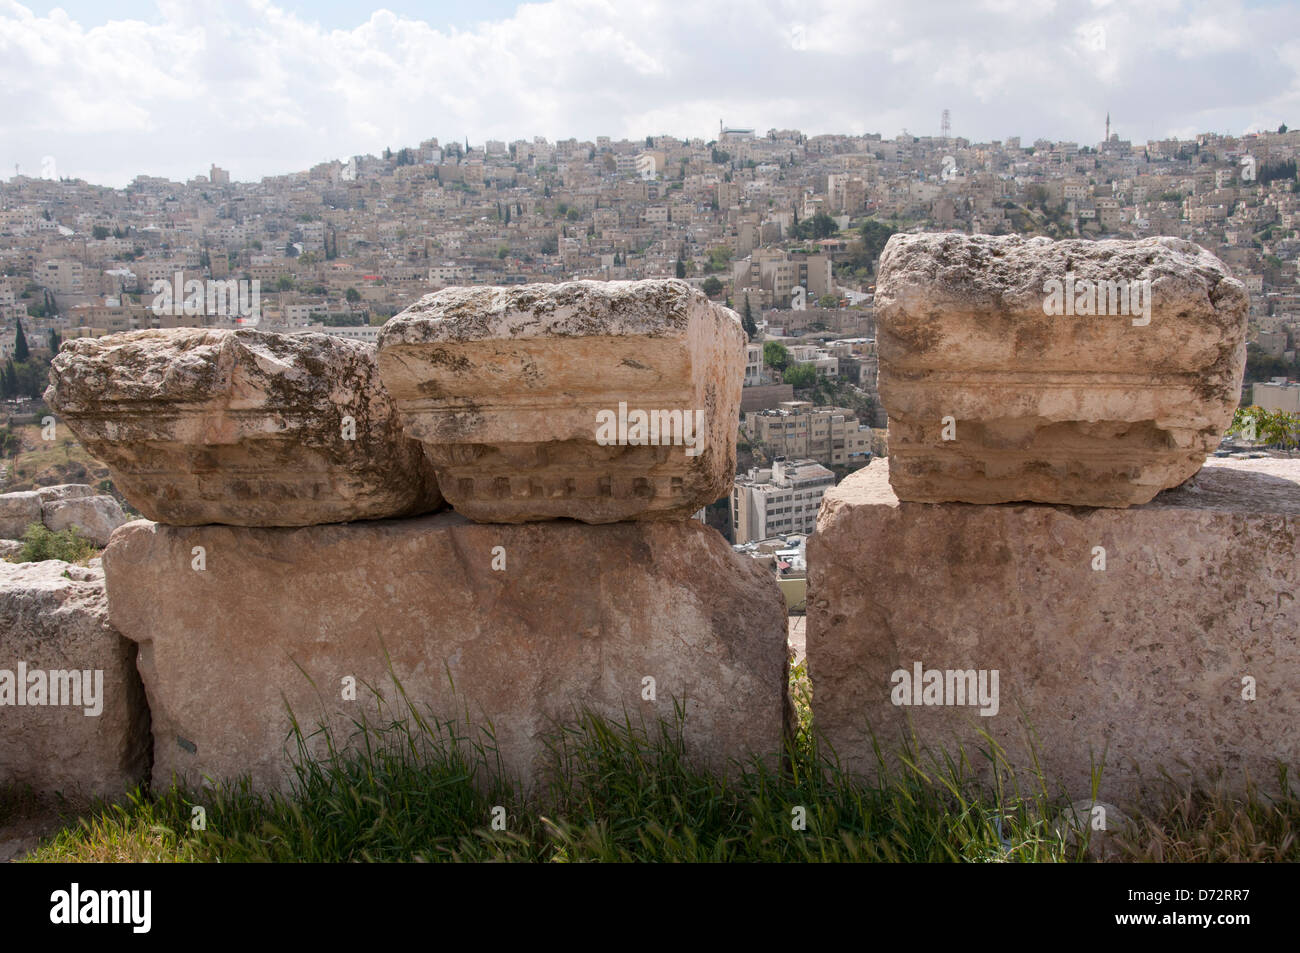 La Jordanie, Amman. La citadelle romaine avec vue sur la ville Banque D'Images